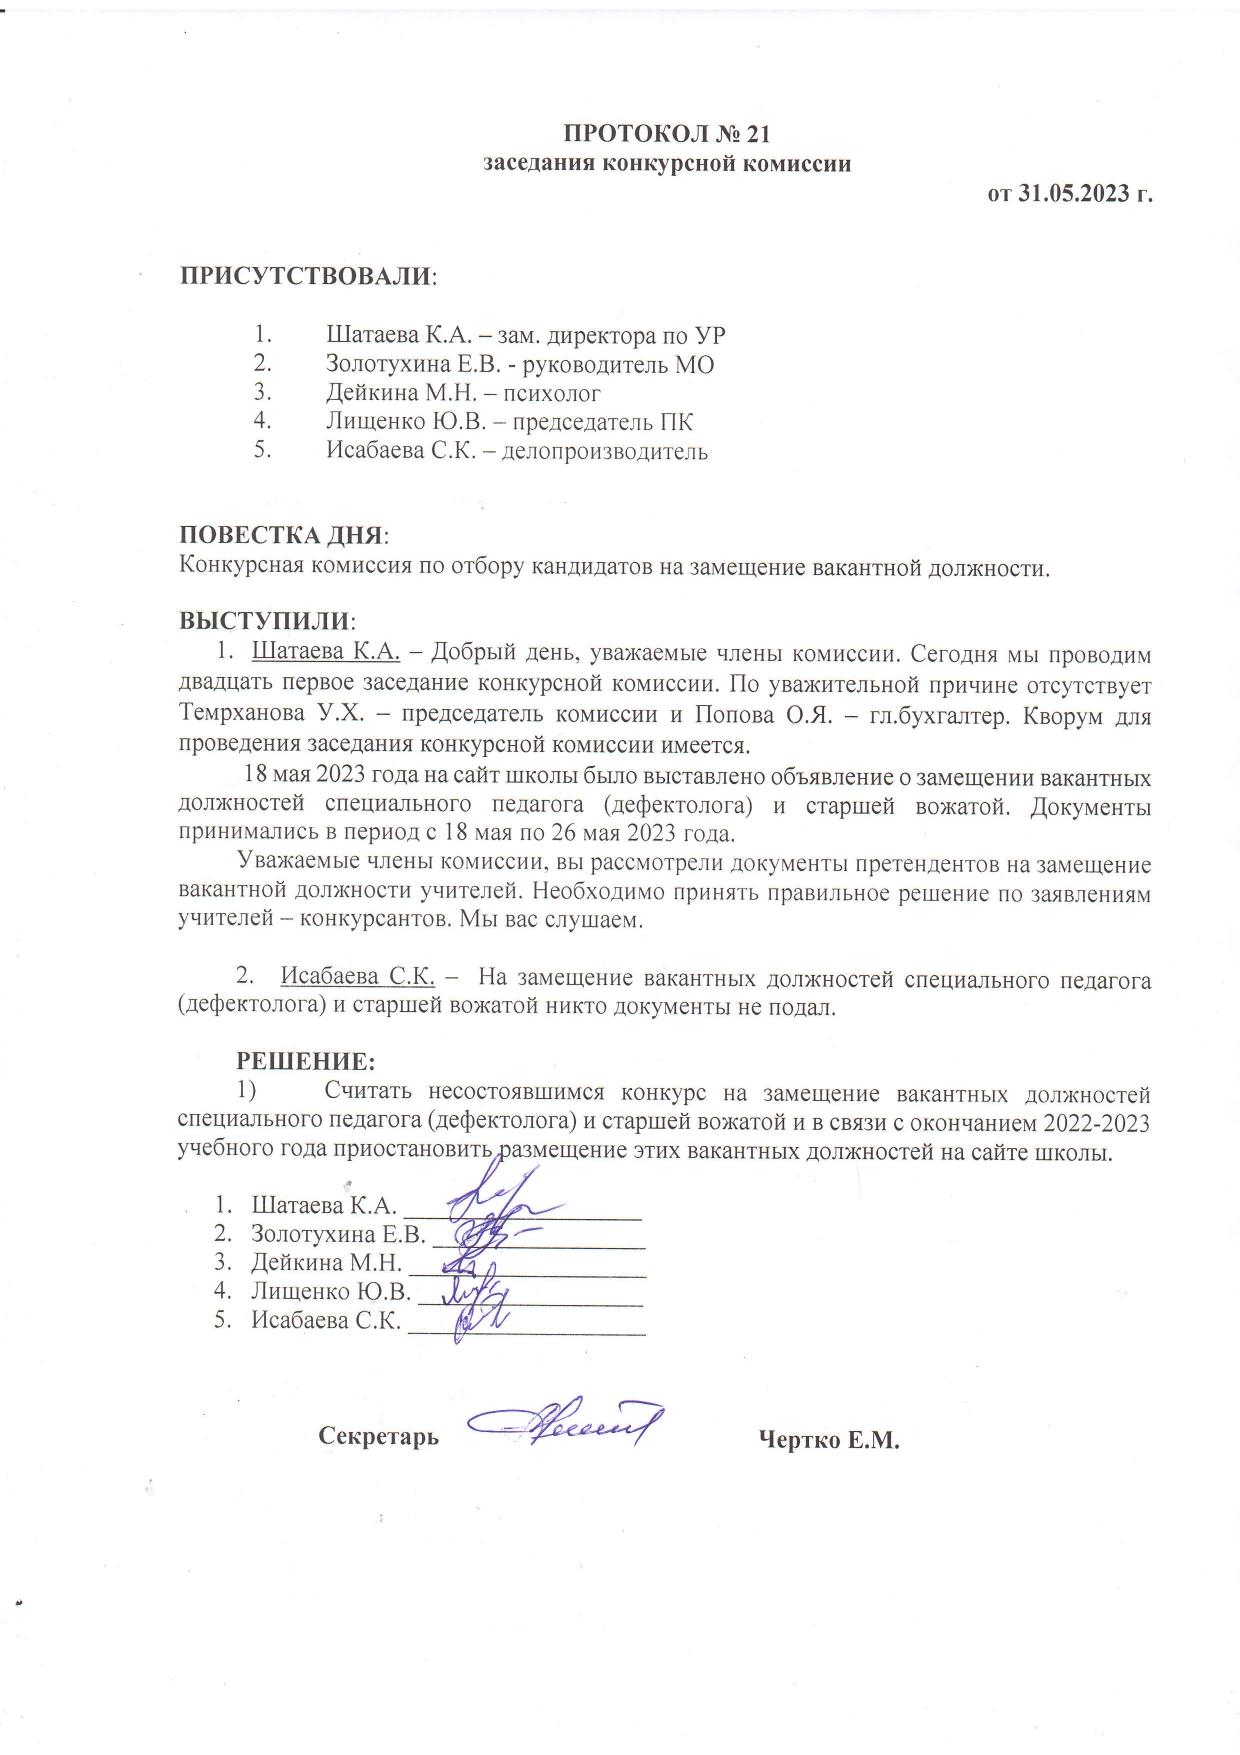 ПРОТОКОЛ №21 заседания конкурсной комиссии от 31.05.2023